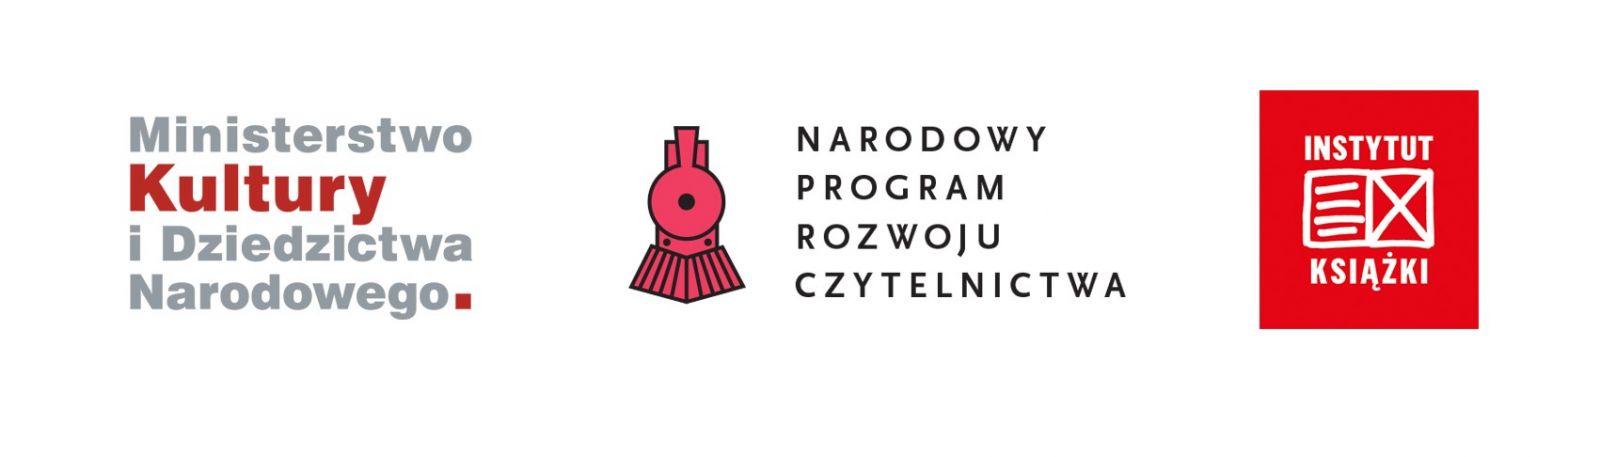 Logo Ministerstwo Kultury i Dziedzictwa Narodowego, logo Narodowy Program Rozwoju Czytelnictwa, logo Instytut Kultury.